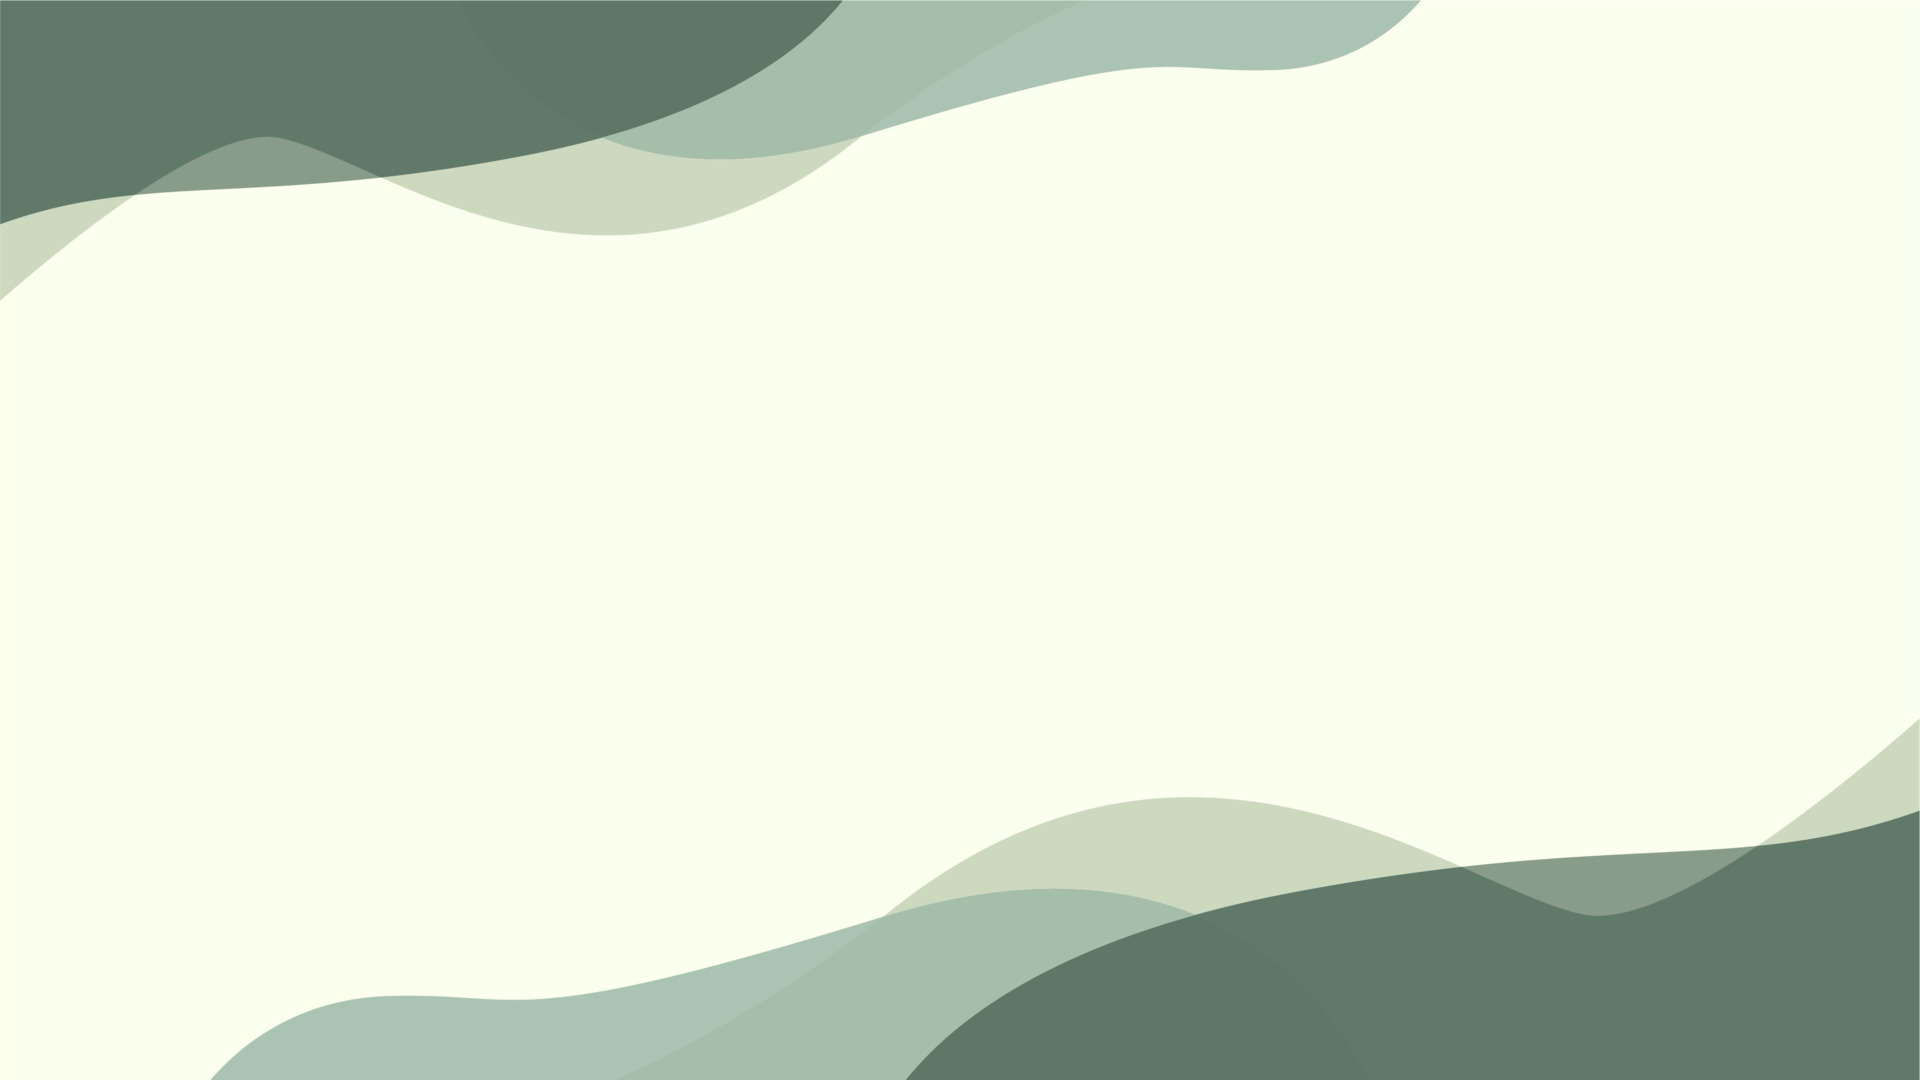 Từ vẻ ngoài đơn giản nhưng tinh tế, hình nền xanh lá cây xám thẩm mỹ này sẽ làm cho màn hình của bạn trông đẹp hơn nhiều lần. Với 11589026 Vector Art tại Vecteezy, bạn sẽ chắc chắn tìm thấy hình nền đúng ý mình.